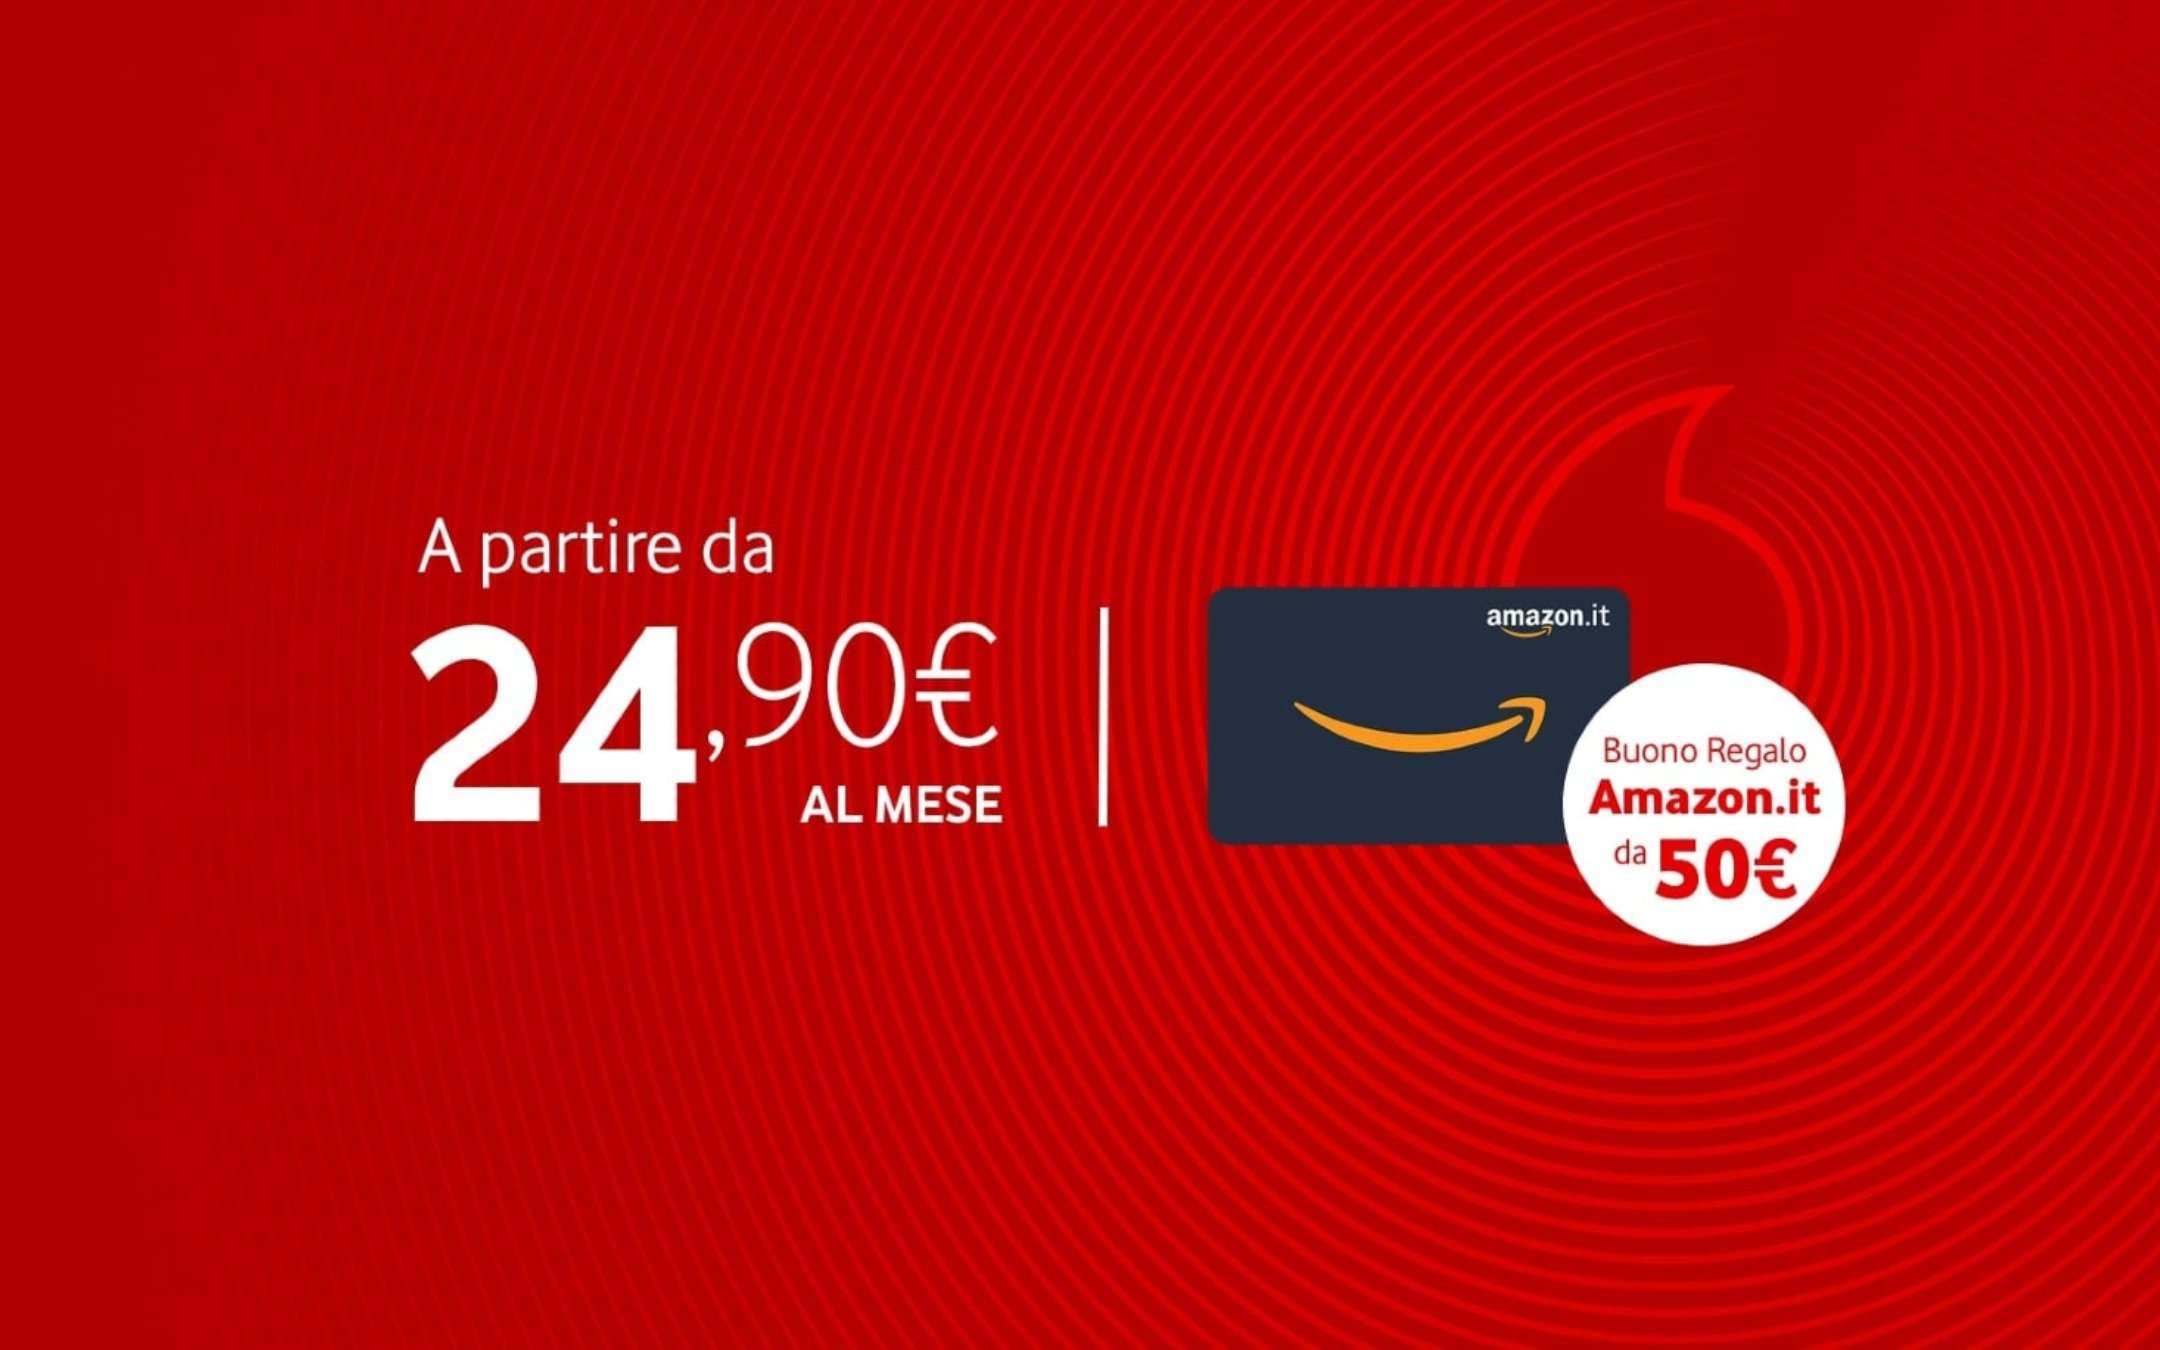 Vodafone: Fibra a 24,90€ con Buono Amazon da 50€